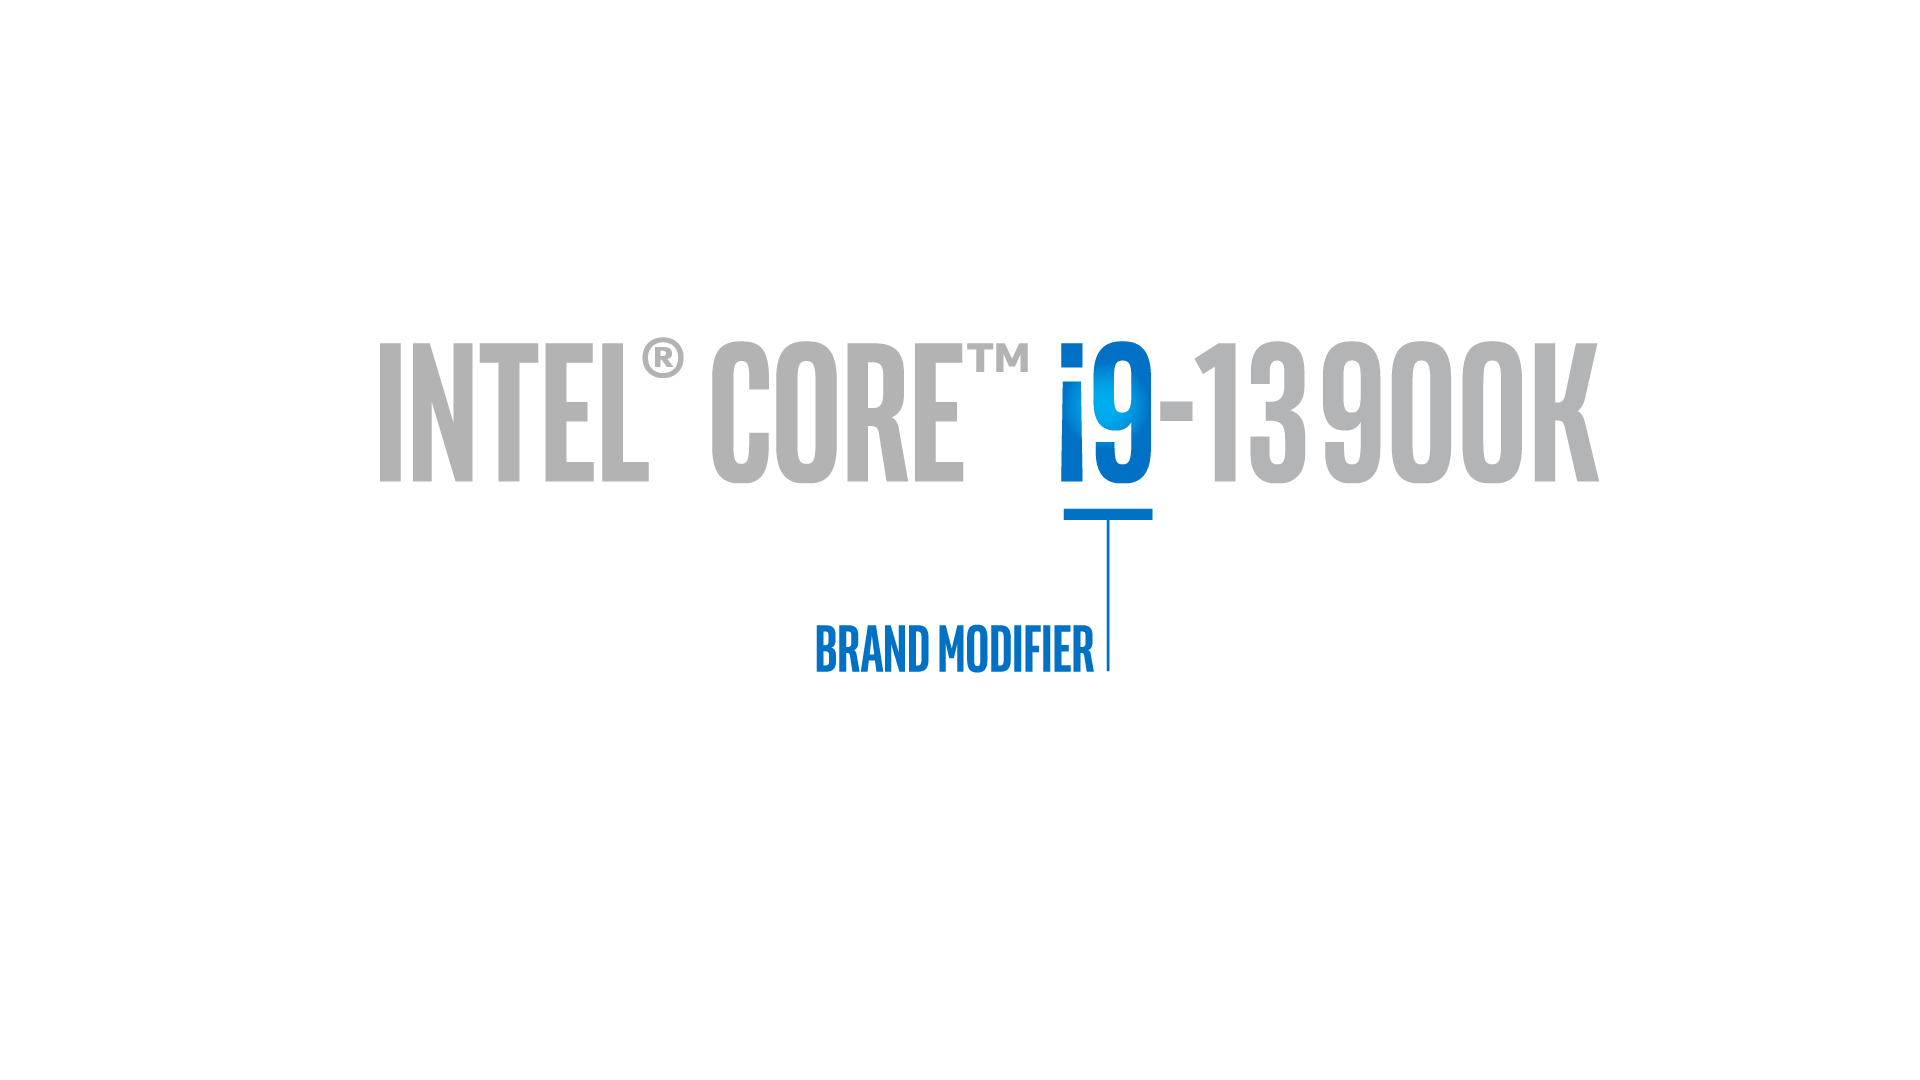 Lõi Intel i9-13900K - bộ điều chỉnh nhãn hiệu